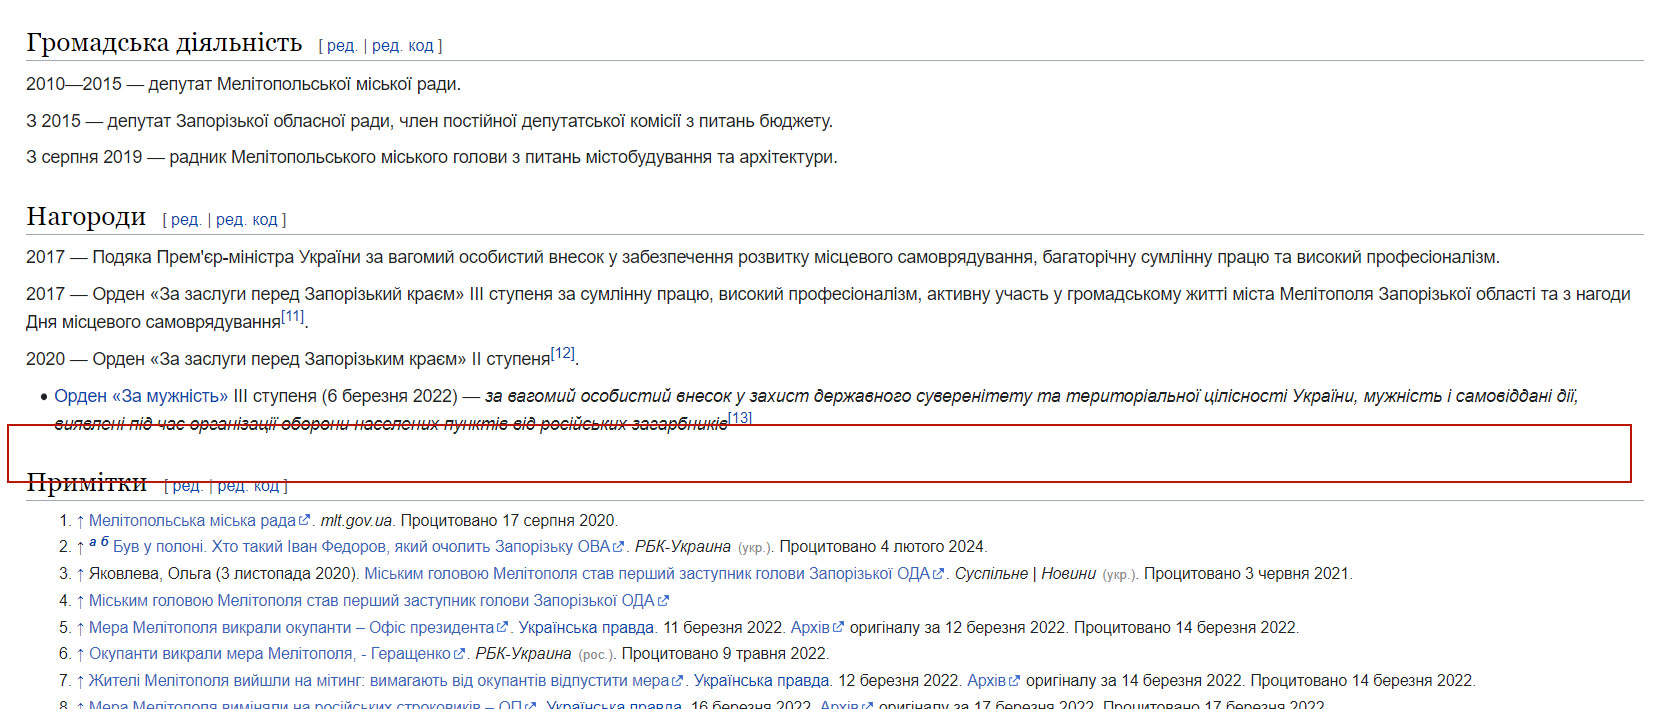 Скріни зі сторінки Вікіпедії Івана Федорова